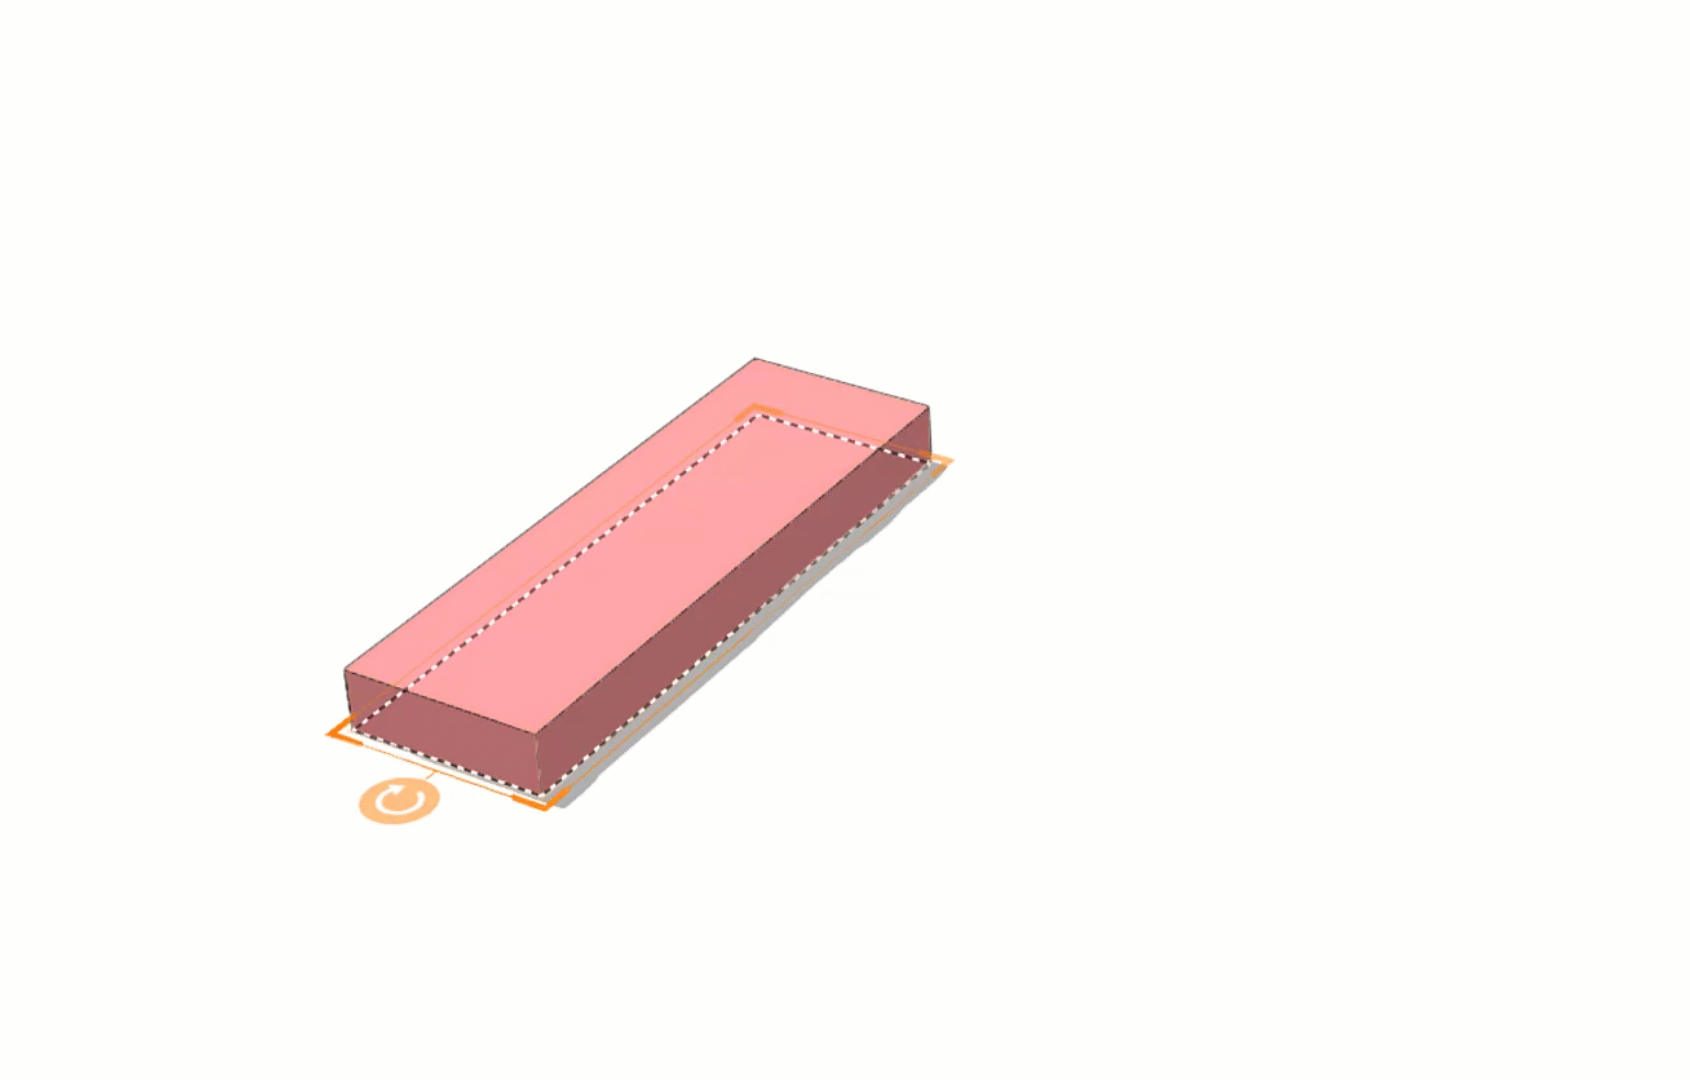 GIF с изображением розовой L-образной формы, представляющий инструменты для измерения 3D-зданий и конструкций